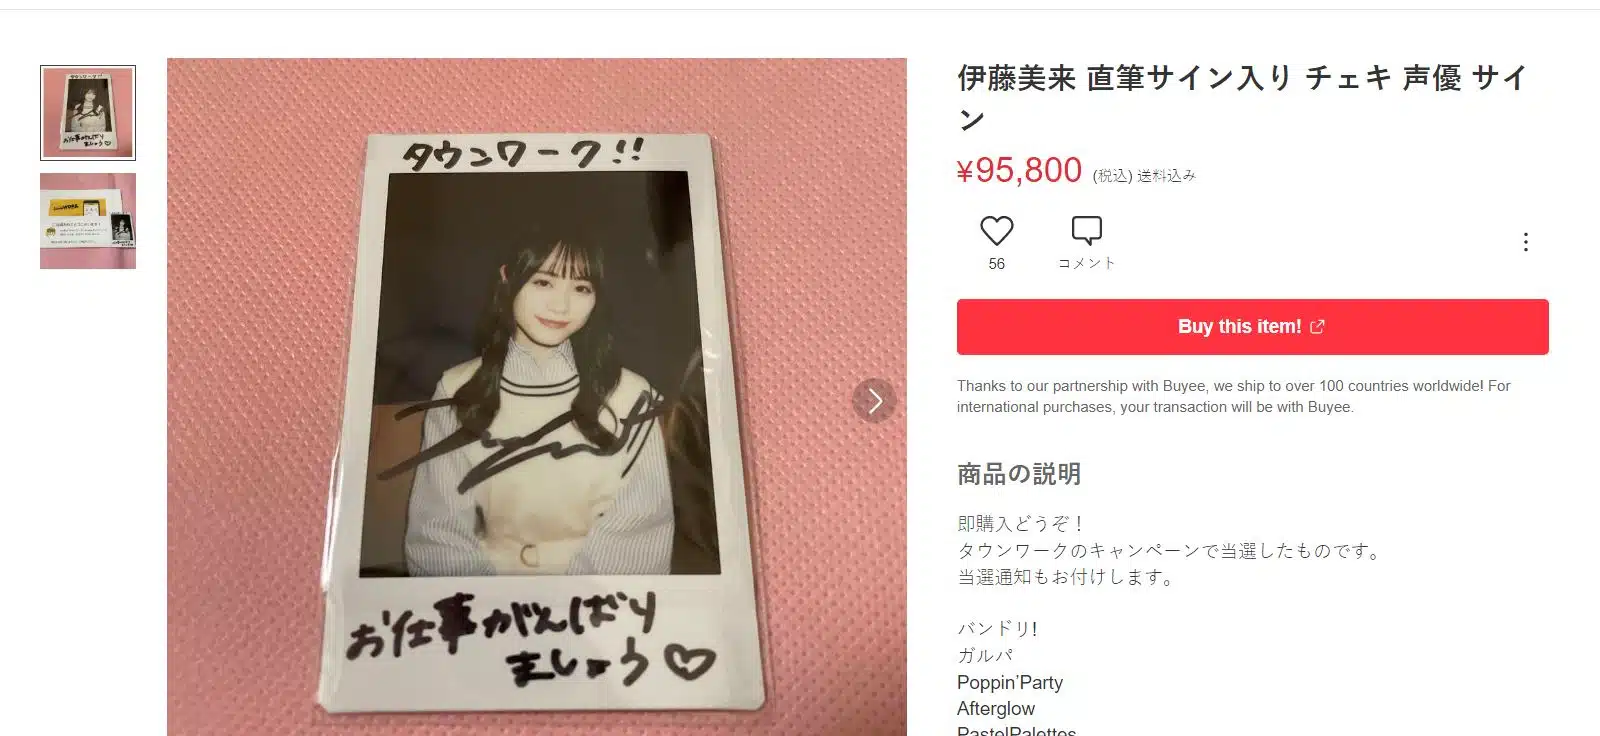 Fans Decepcionados Venden Sus Colecciones De Miku Itou 4